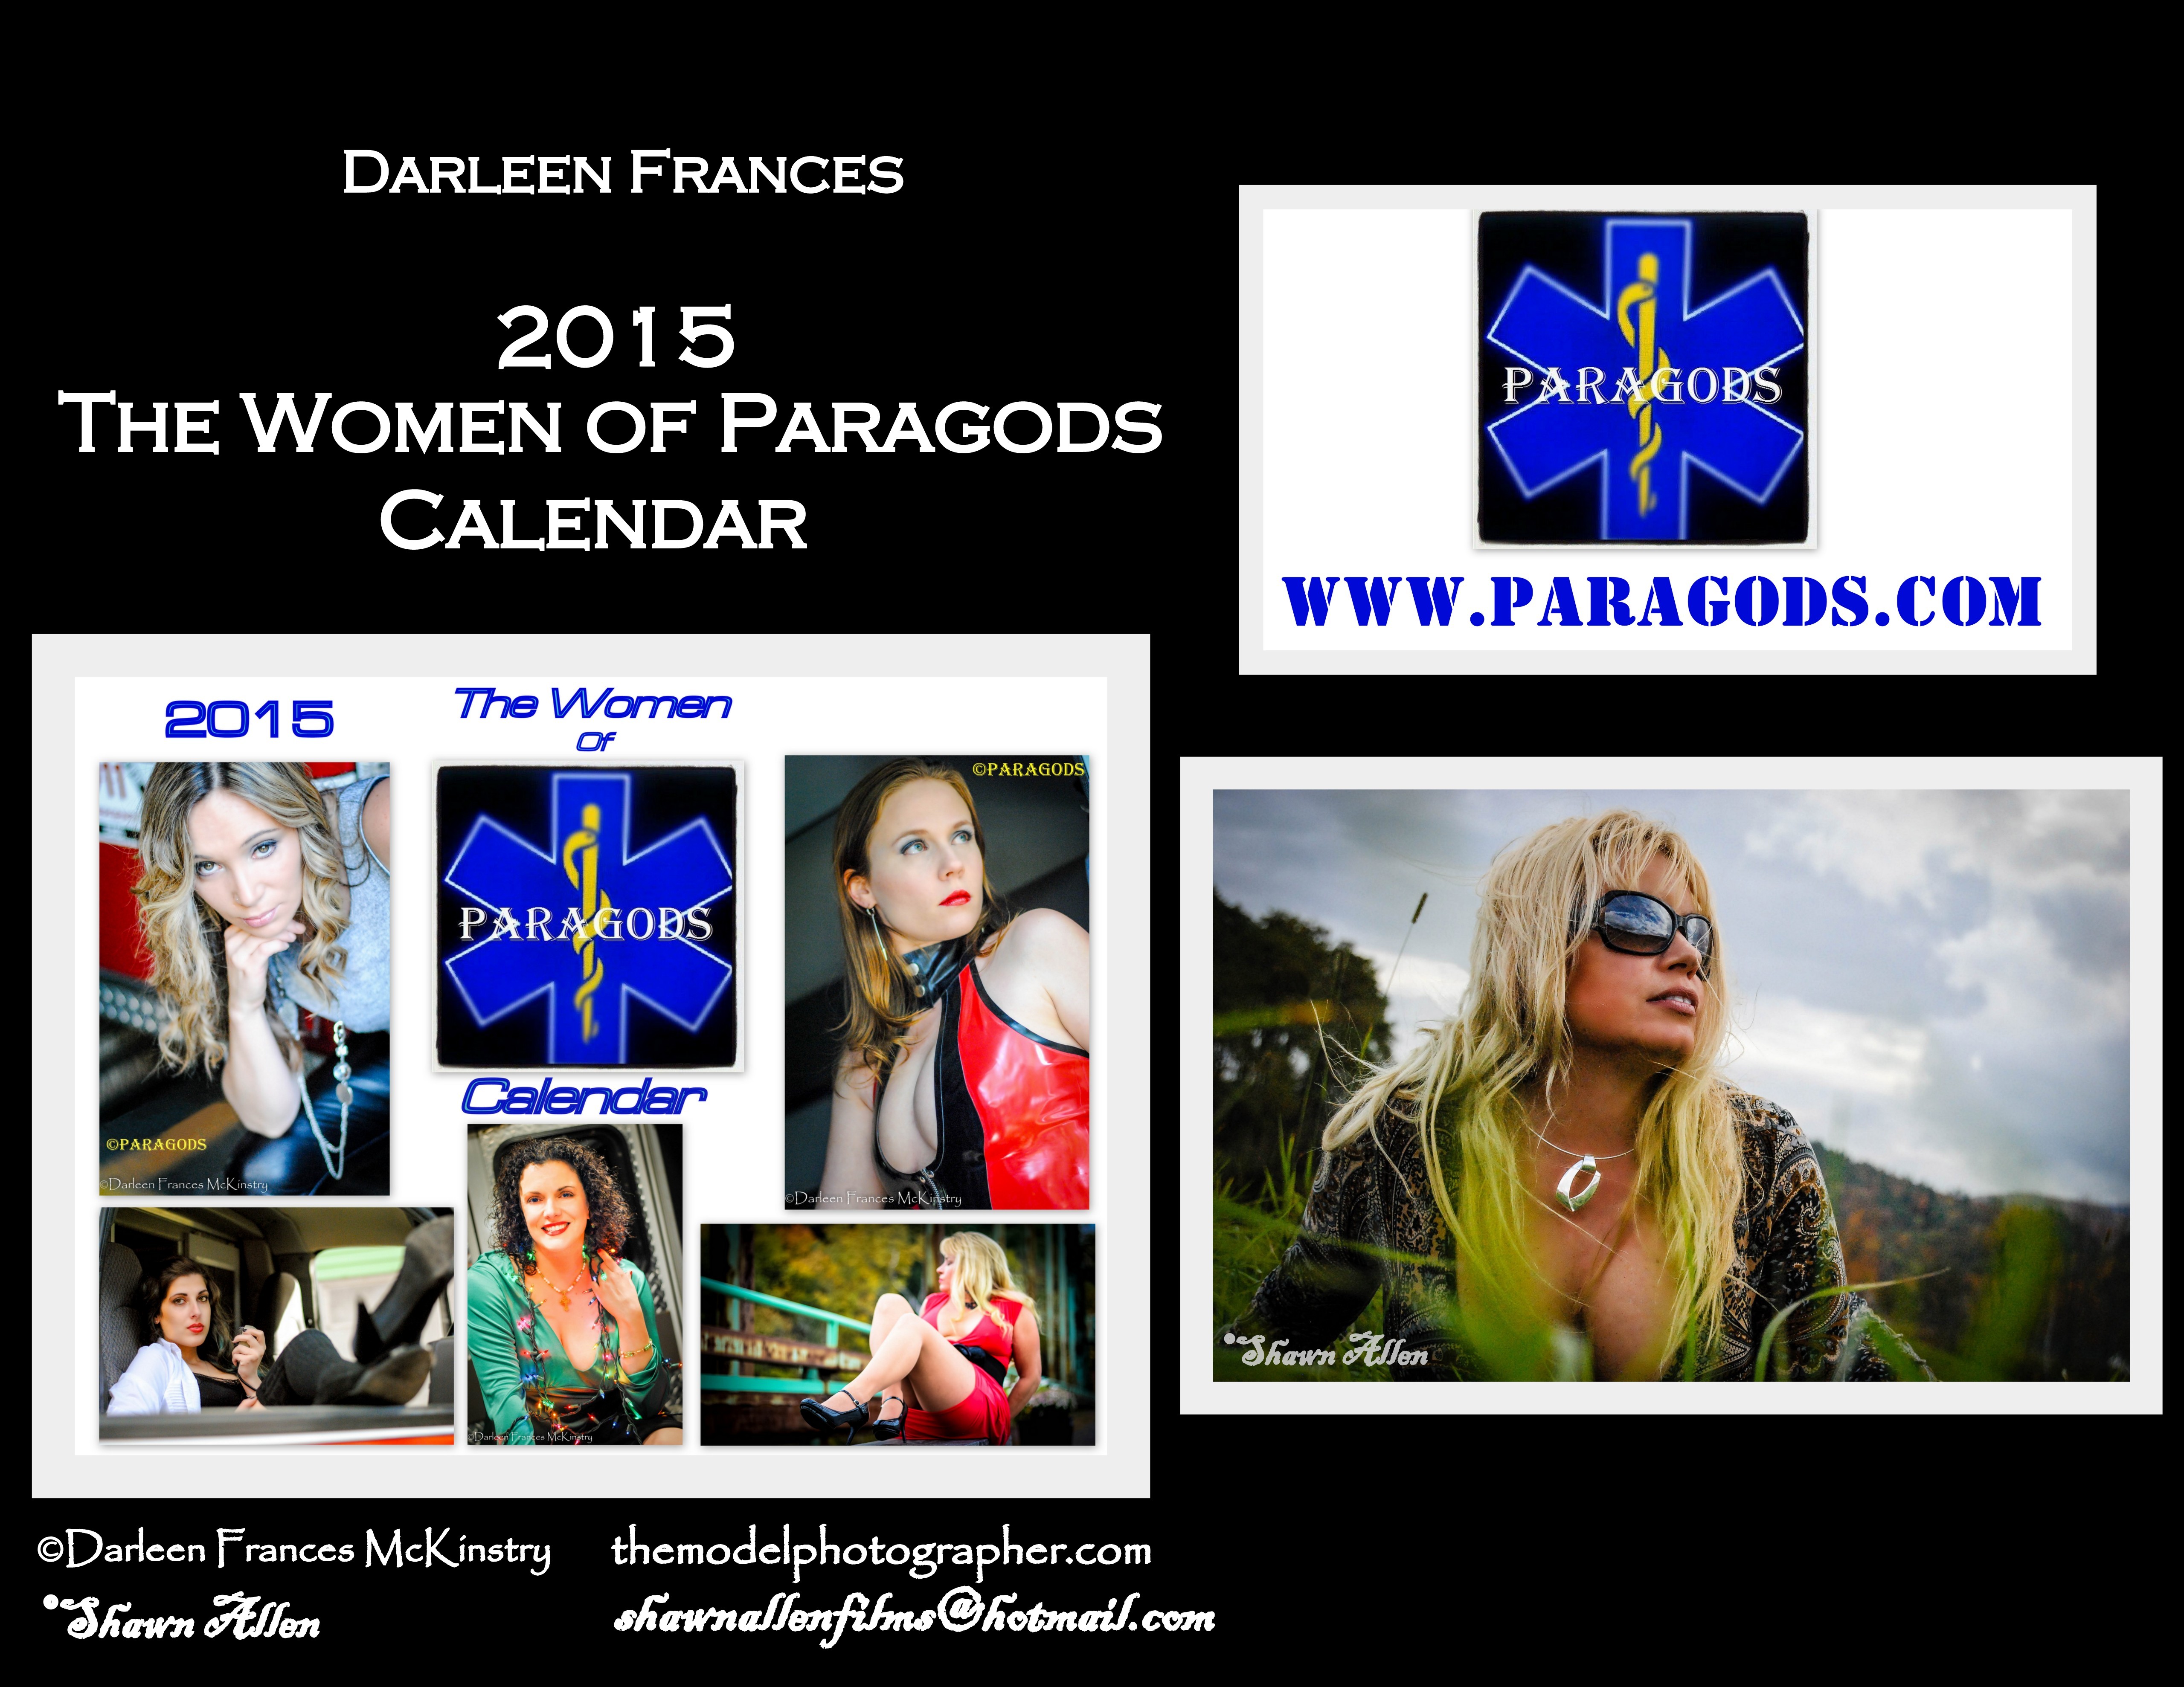 The Women of Paragods Calendar Miss March